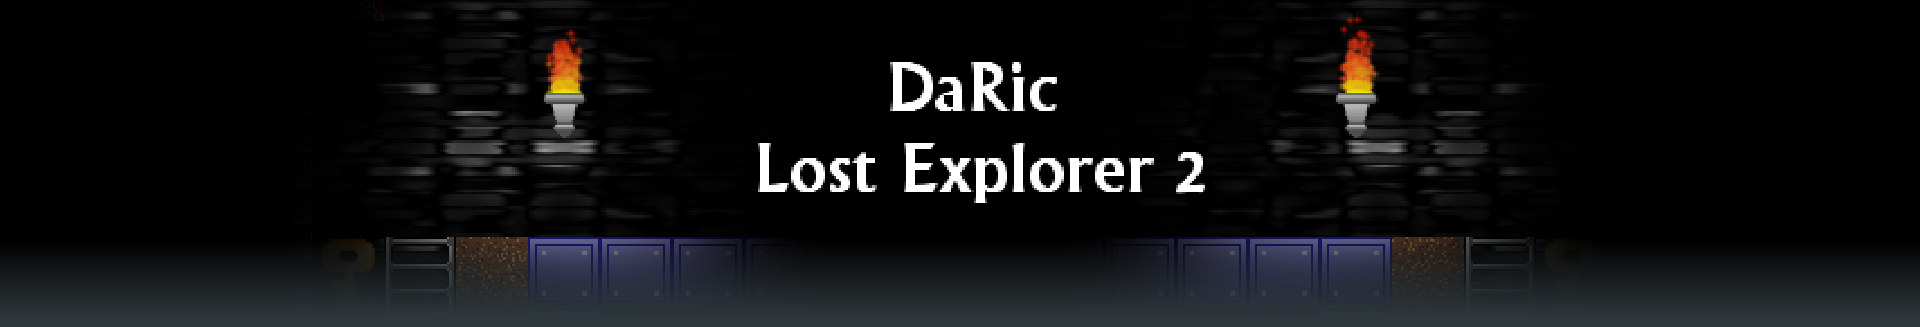 DaRic - Lost Explorer 2